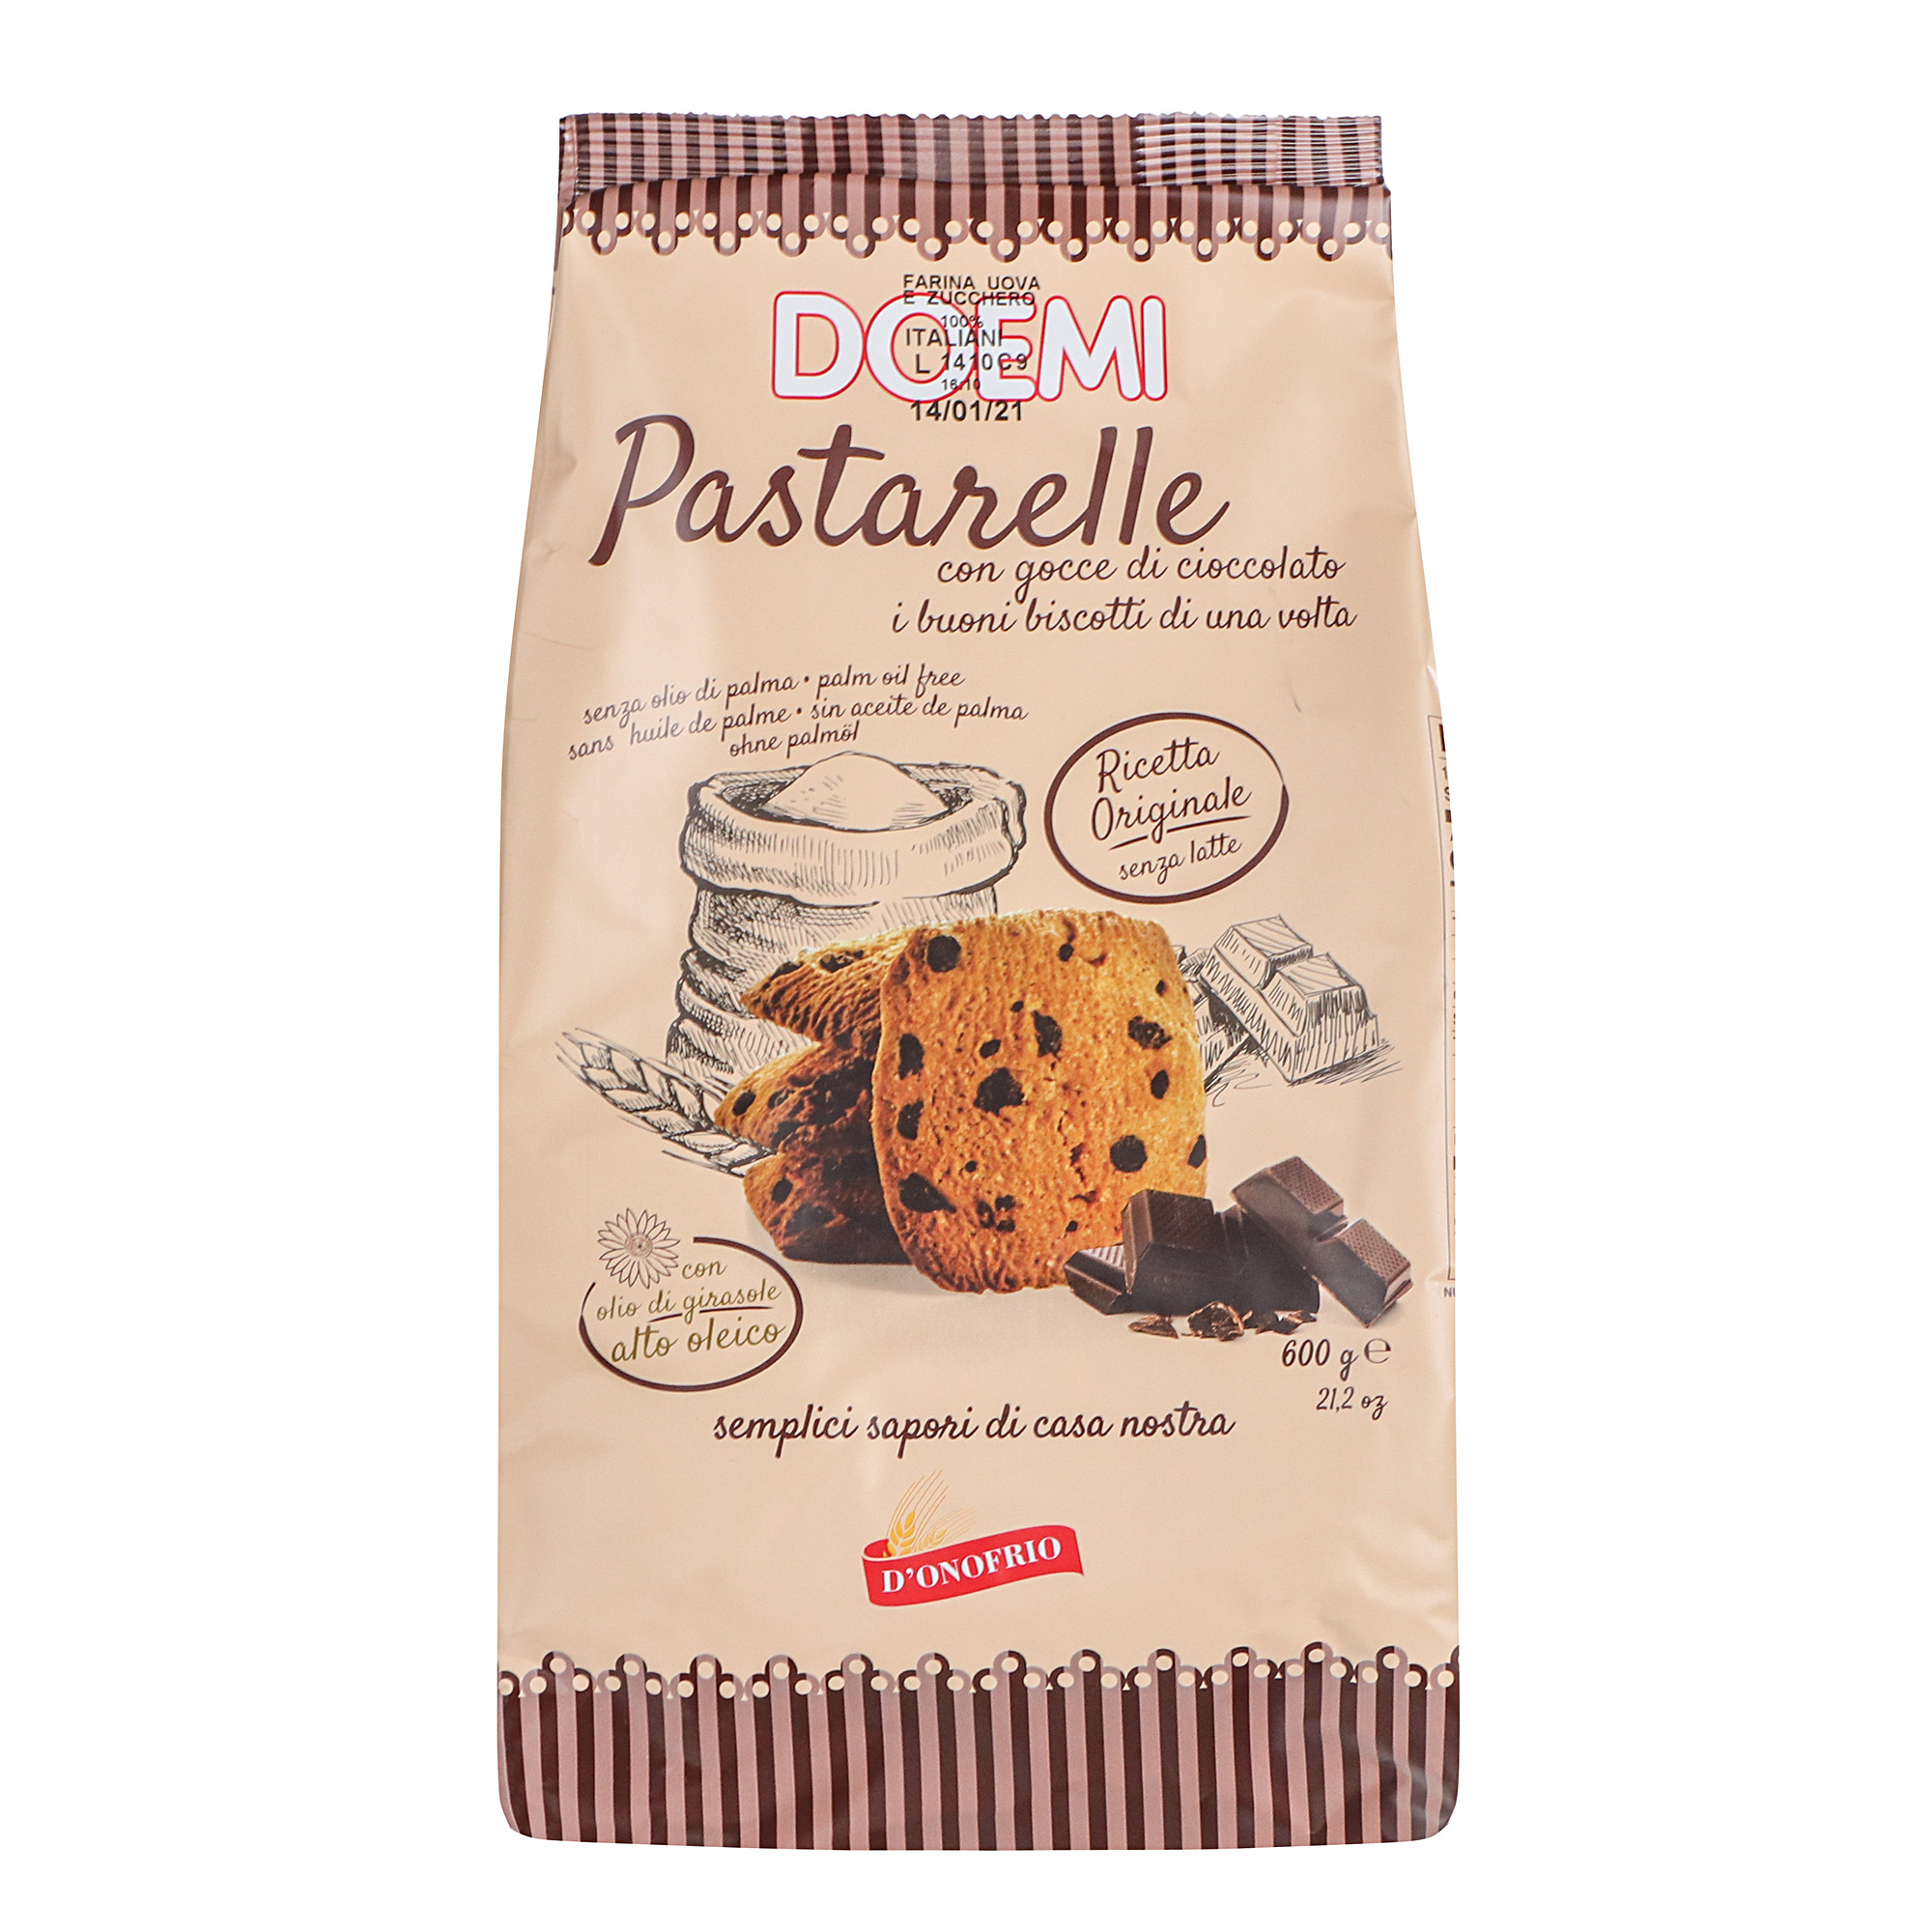 Печенье DOEMI Pastarelle с шоколадной крошкой 600 г